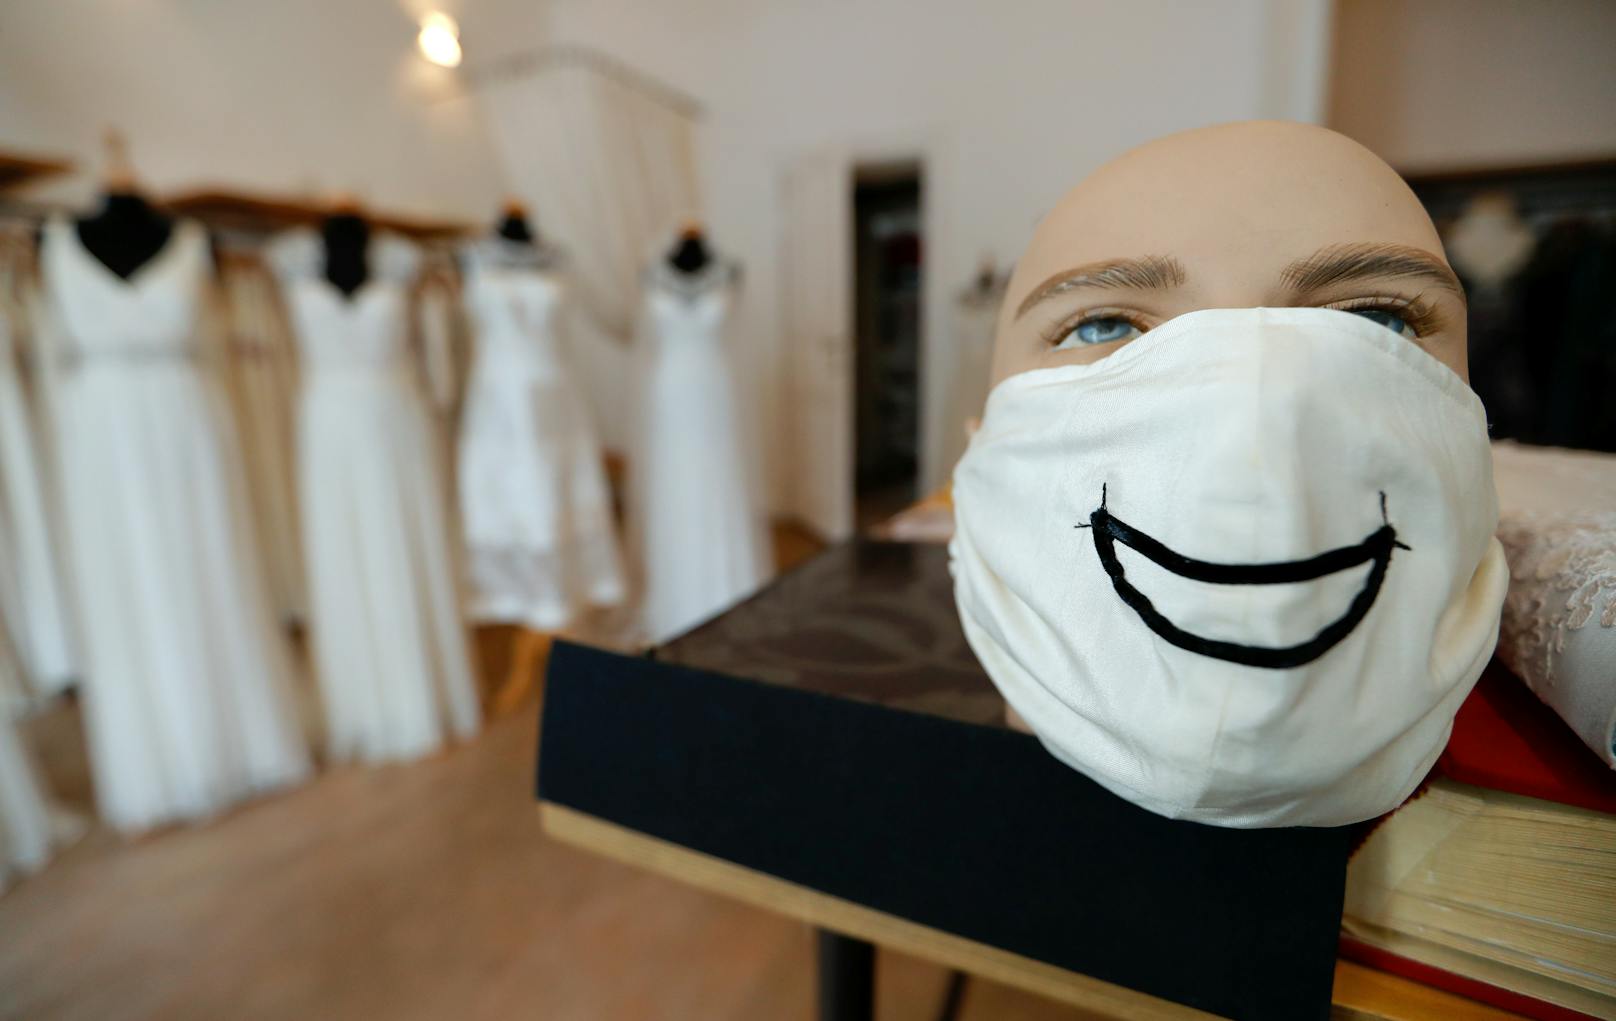 Soziologe Girtler: "Wir tragen doch alle eine Maske"